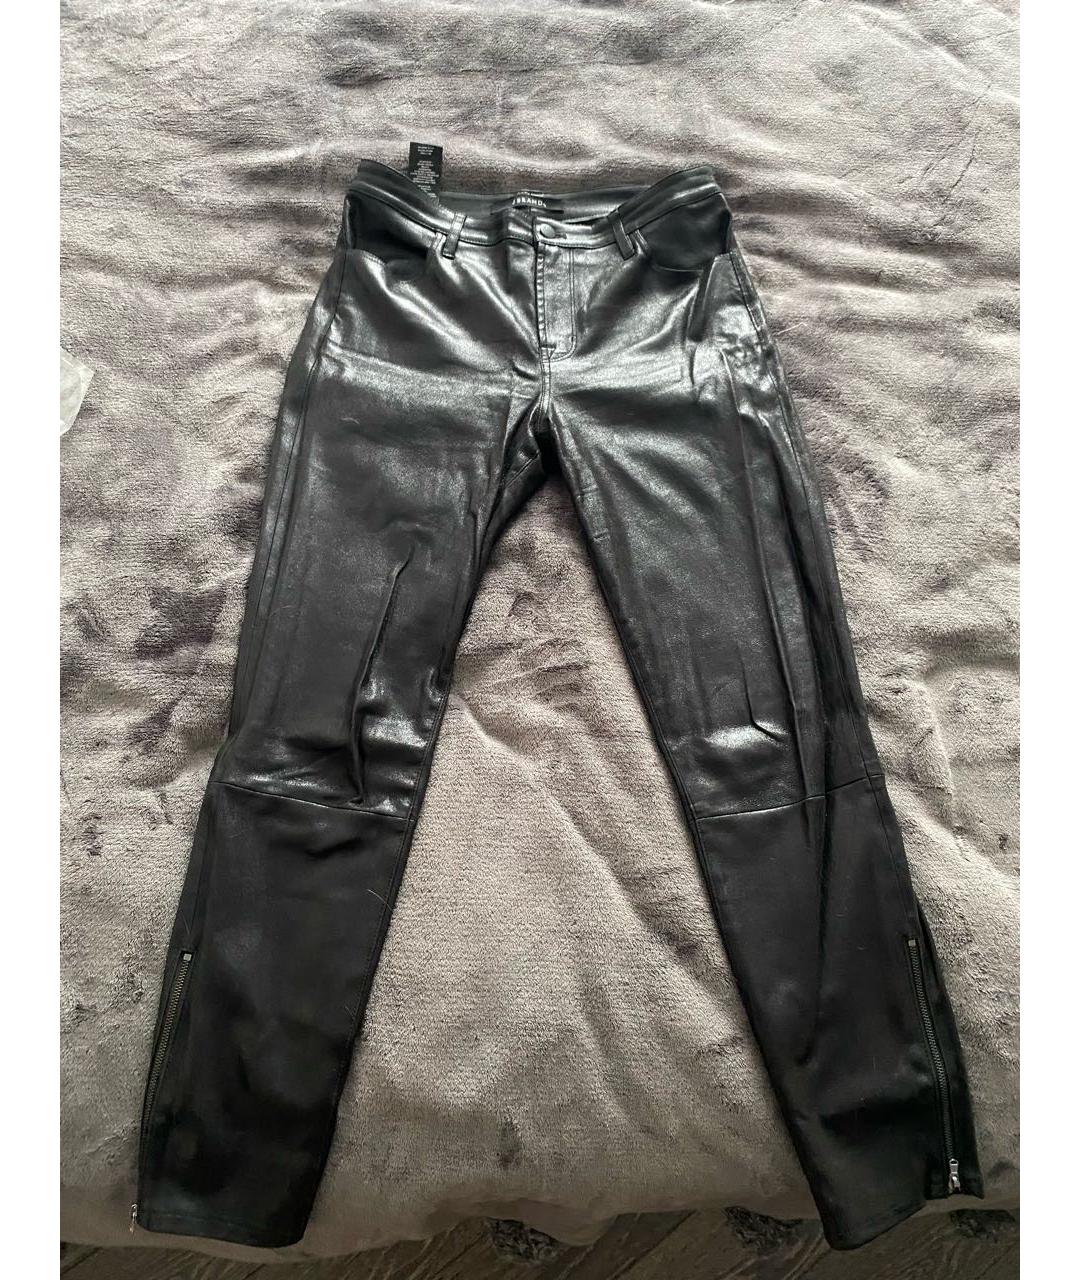 JBRAND Черные кожаные брюки узкие, фото 6